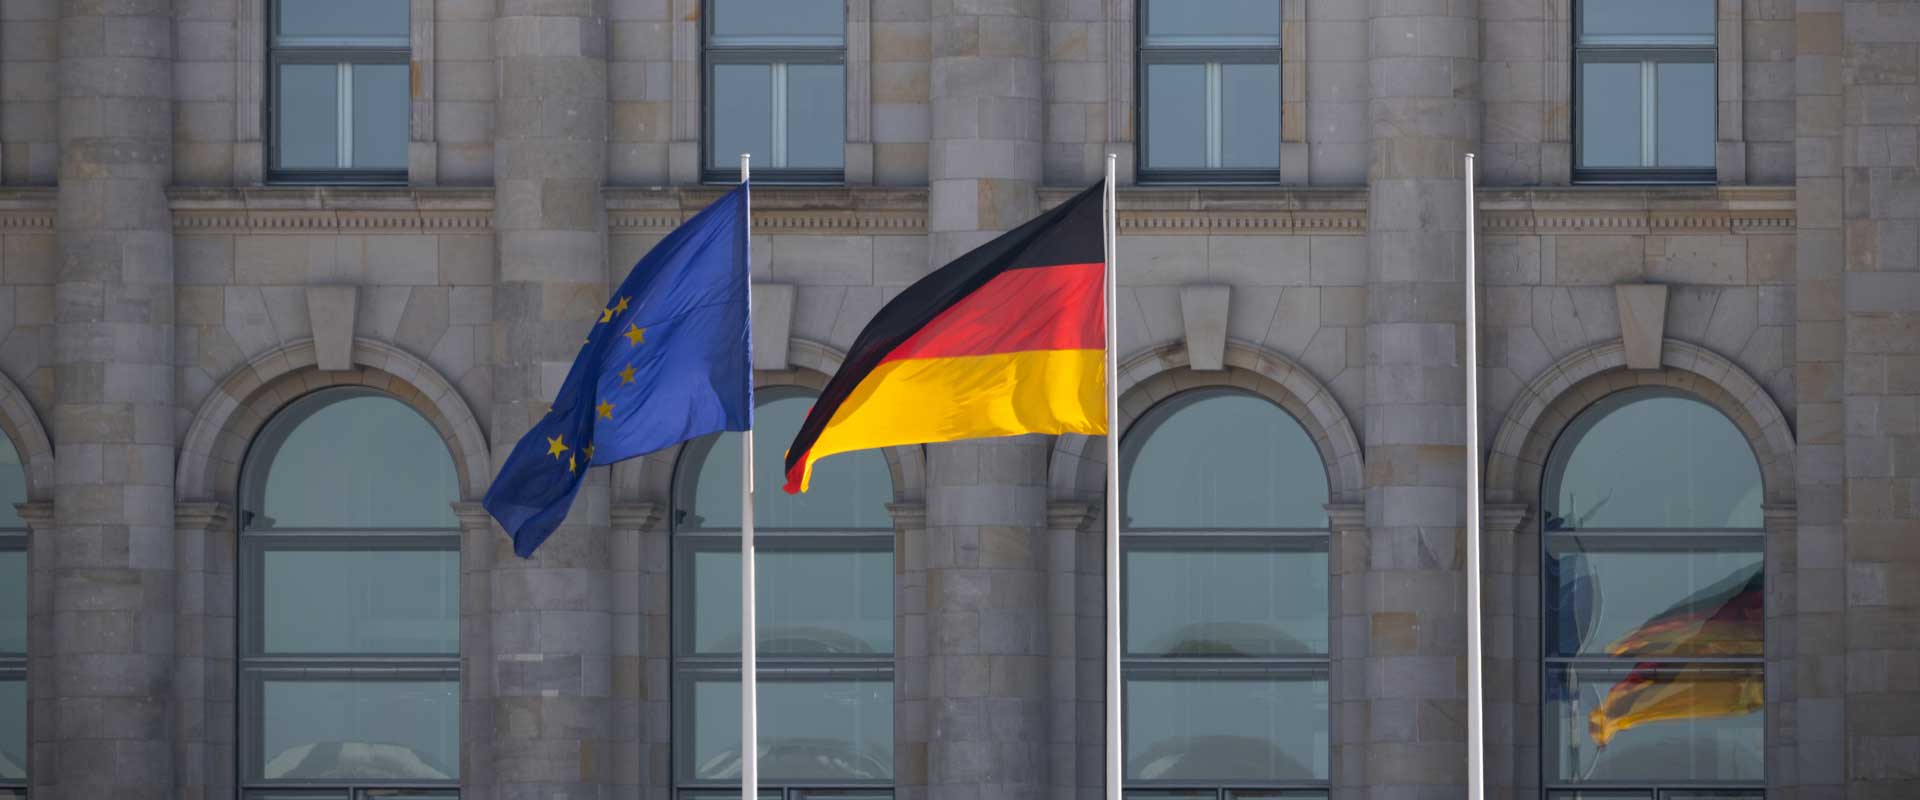 Anerkennung einer Ehescheidung in Deutschland durch einen Standesbeamten im EU-Ausland?